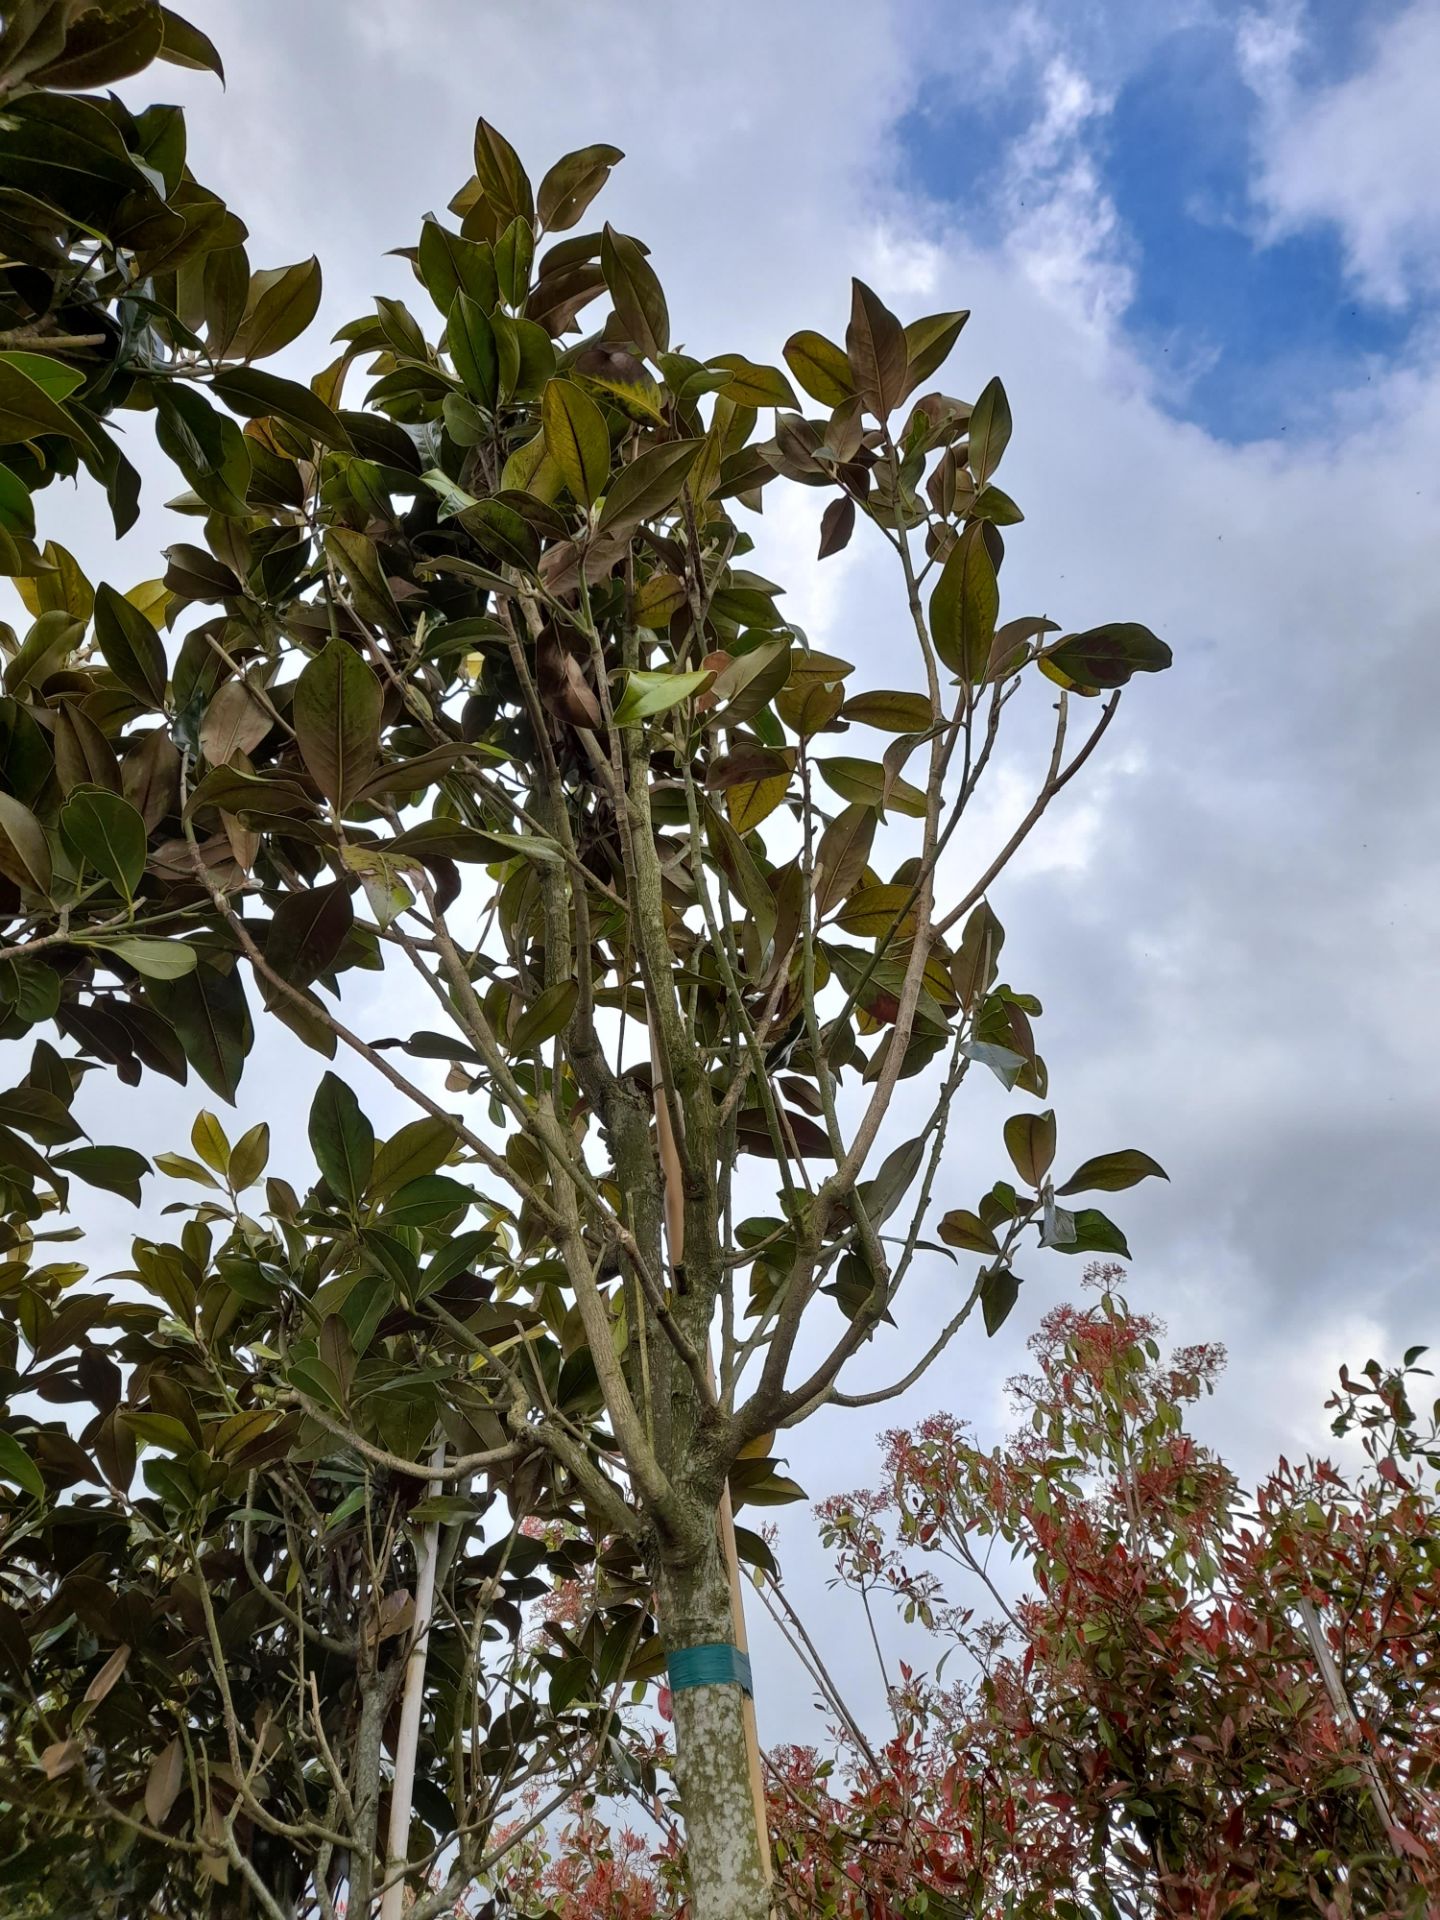 2 x Magnolia Grandiflora, located to 14A. (Viewing